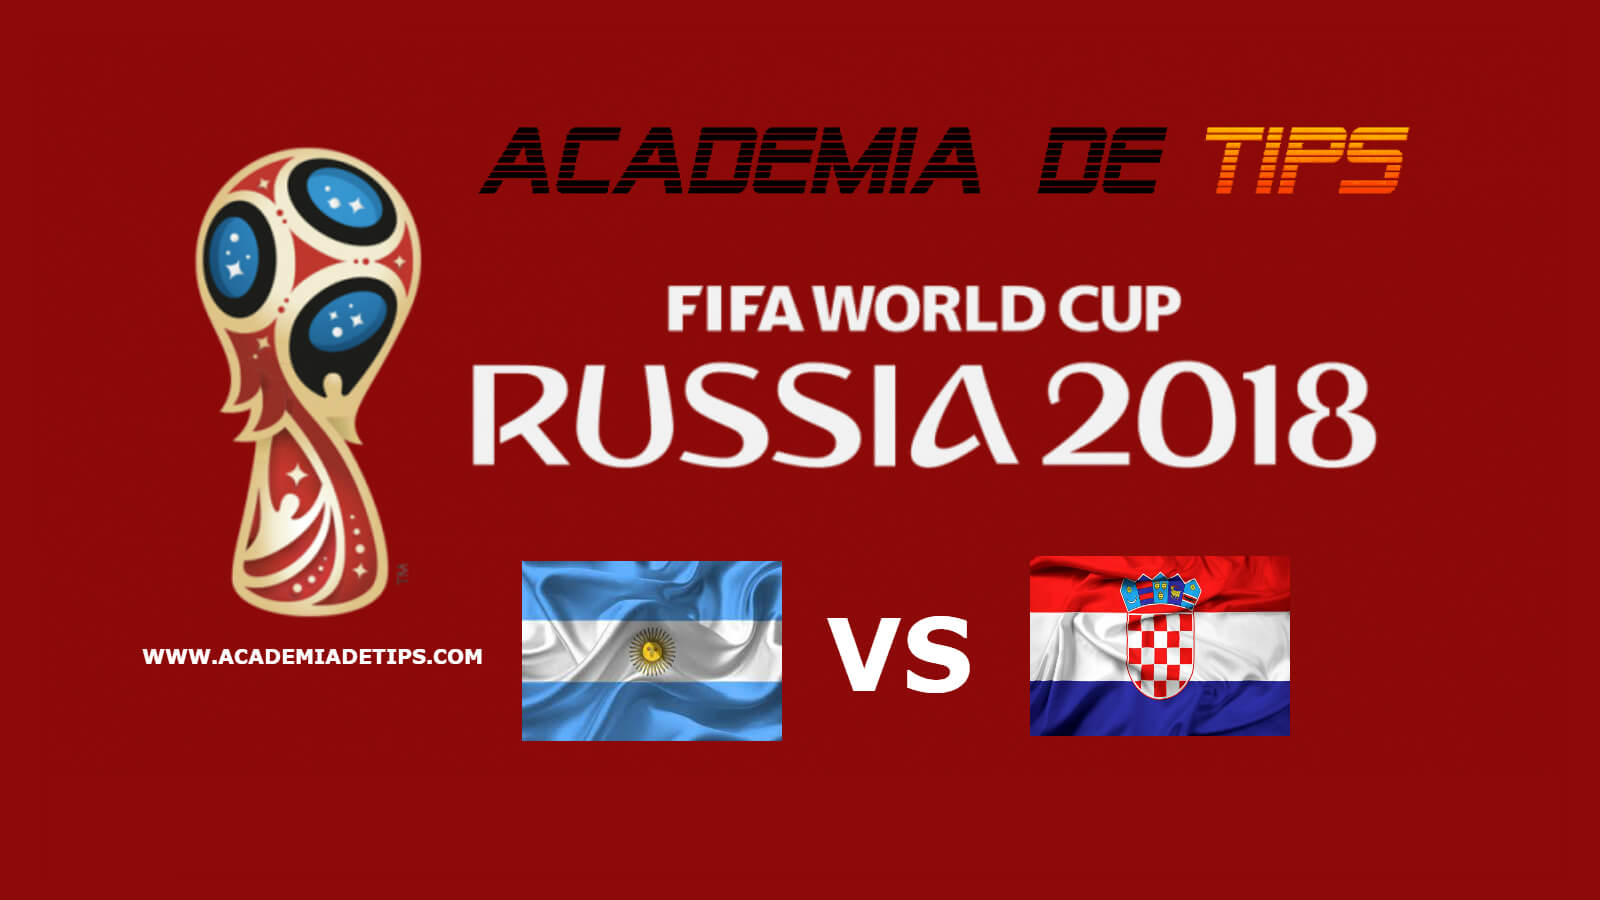 Prognóstico Argentina vs Croácia - Mundial FIFA 2018 • A seleção da Argentina entrou com o pé esquerdo neste Mundial FIFA 2018. Havia grande expetativa para